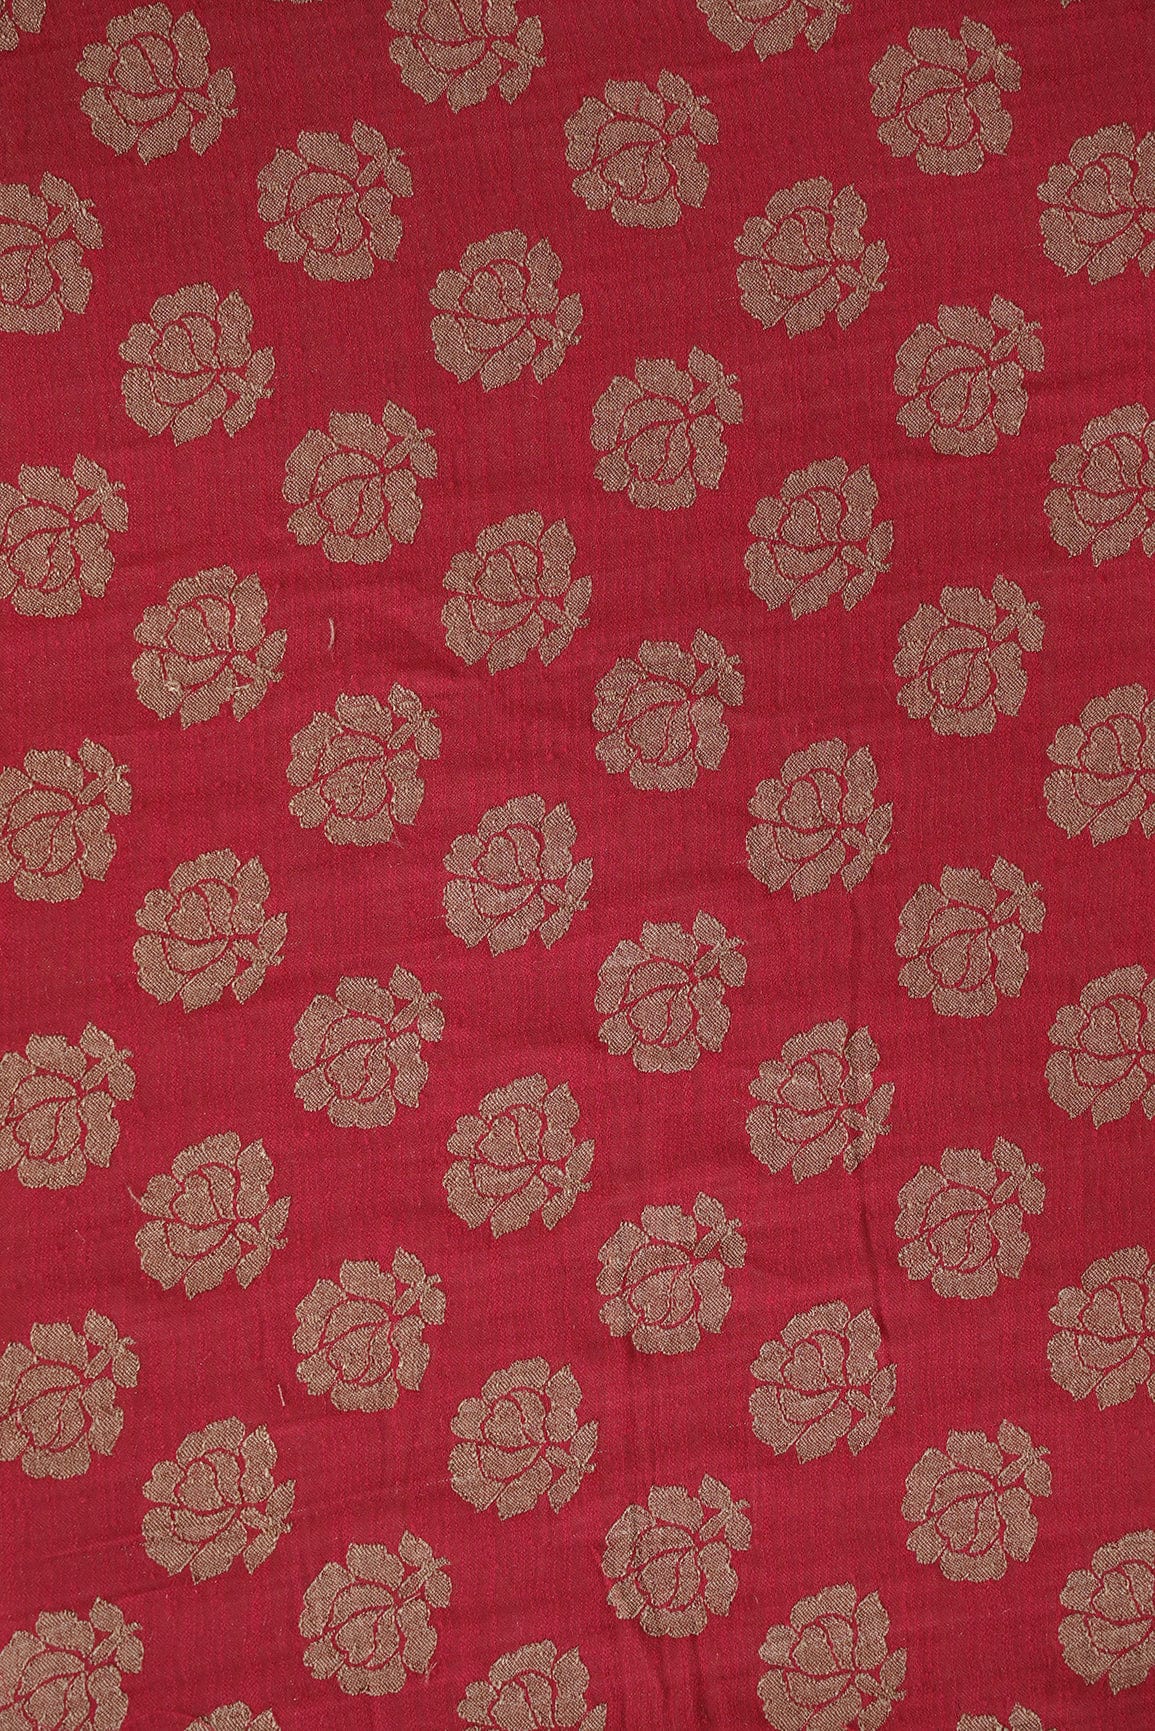 doeraa Banarasi Fabrics Red Floral Pure Taspa Jute Banarasi Jacquard Fabric